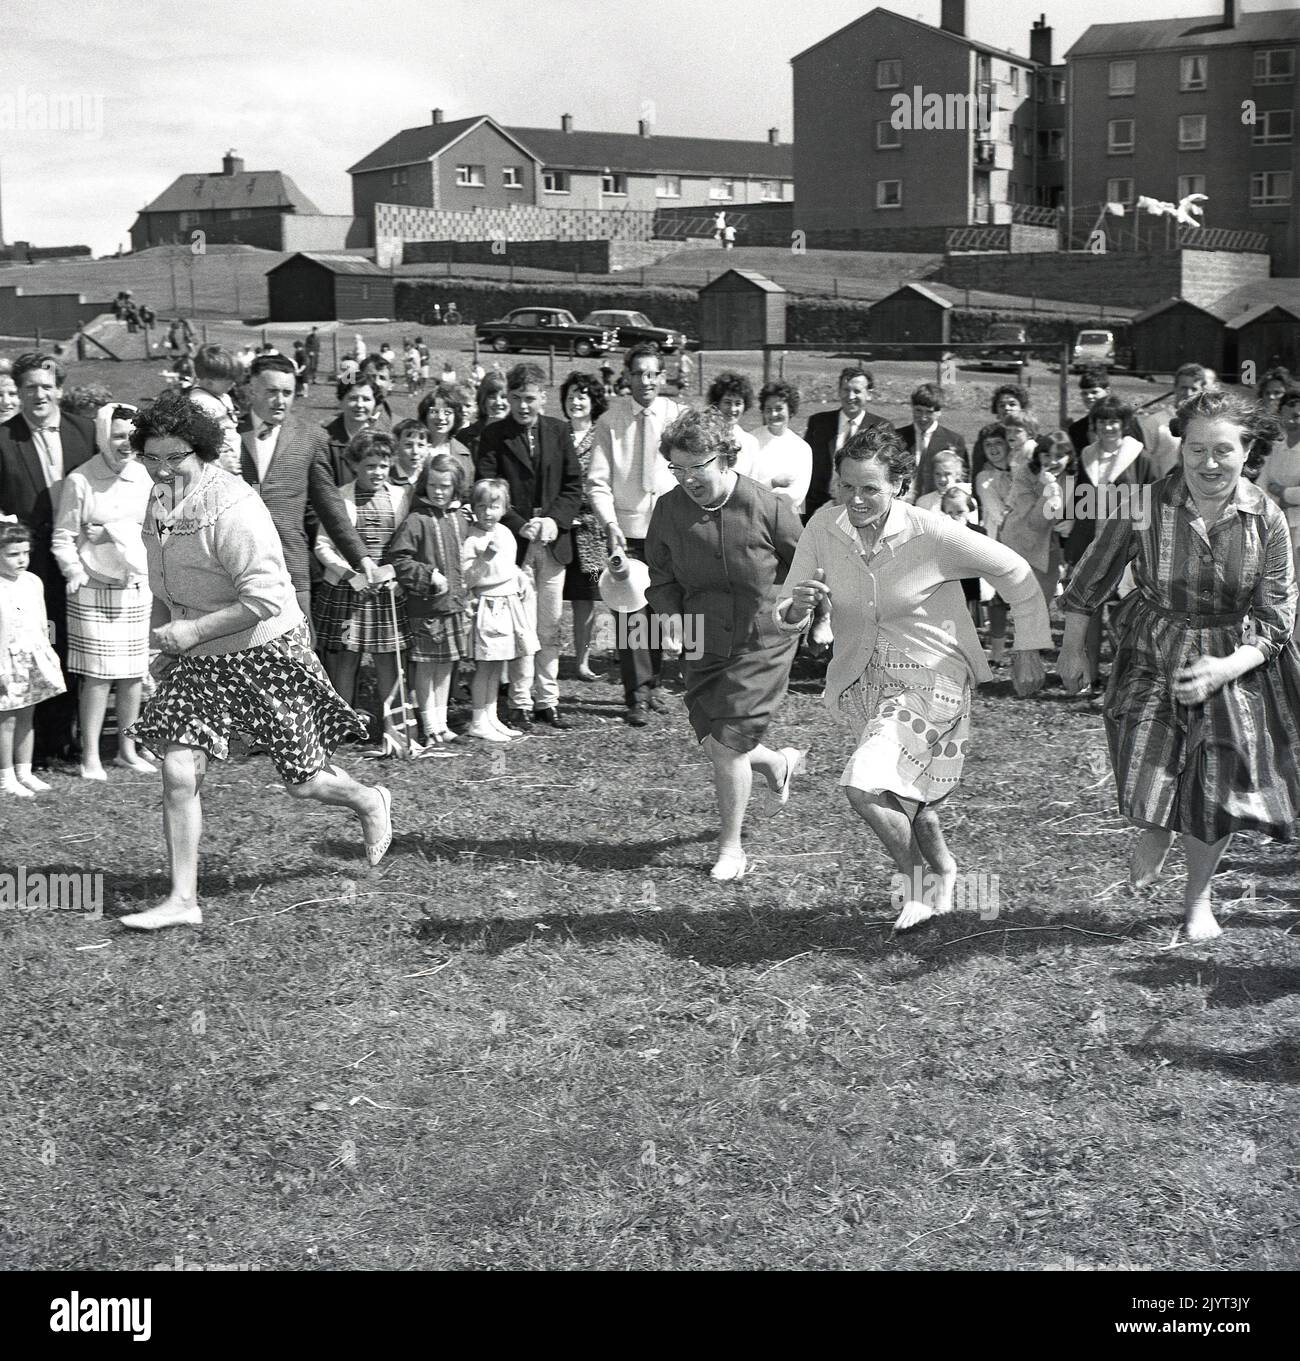 1965, historique, les femmes prenant part à une compétition de course, deux dans les pieds de bareft, sur l'herbe dans un champ dans un domaine de logement à North Queensferry, Edimbourg, Ecosse, Royaume-Uni, dans le cadre de la journée de gala de North Queensferry. Banque D'Images